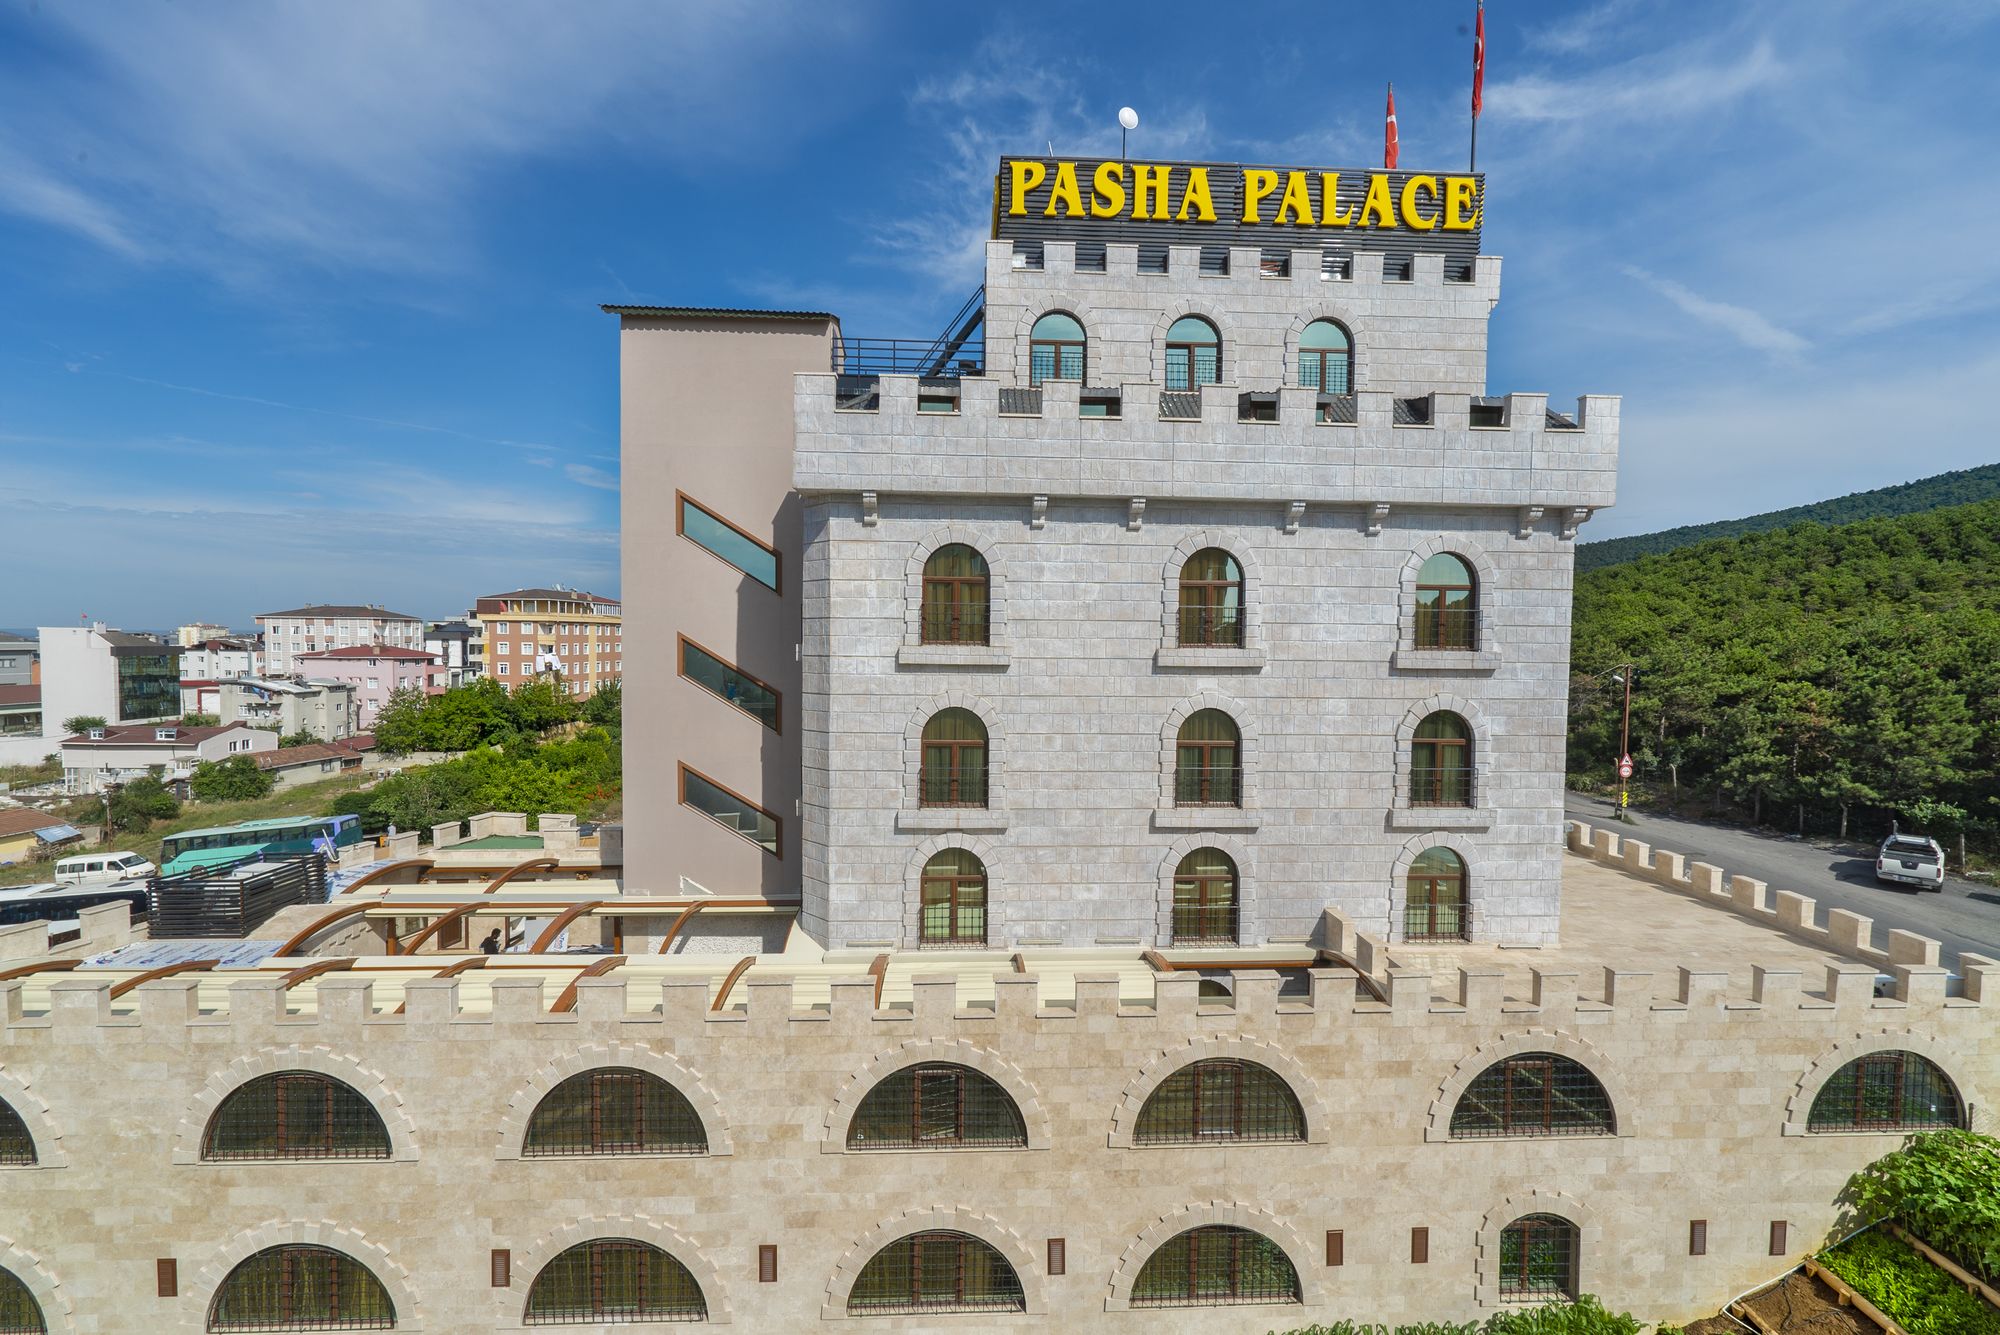 Pasha Palace Hotel